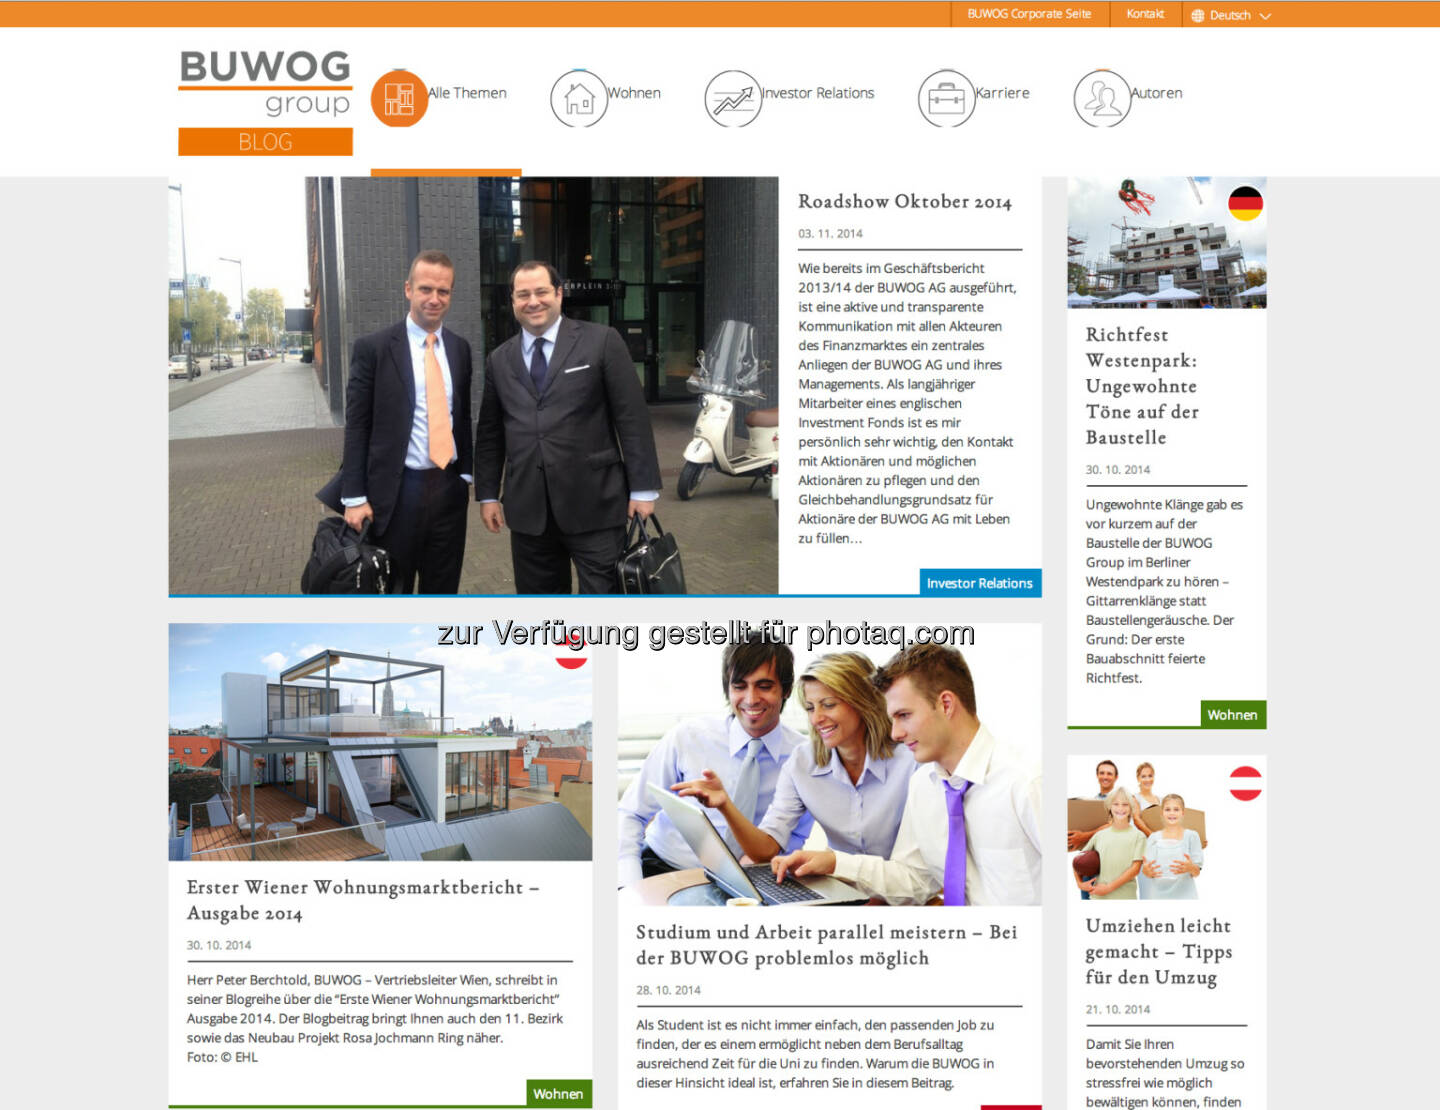 Die Buwog Group hat ihren Corporate Blog unter http://blog.buwog.com/ gestartet und erweitert damit ihr Kommunikationsangebot. Von der 1. ordentlichen Hauptversammlung wurde bereits live gebloggt. Auch ein Bericht über eine aktuelle Investoren-Roadshow der BUWOG AG in London, Amsterdam und Paris ist bereits online.